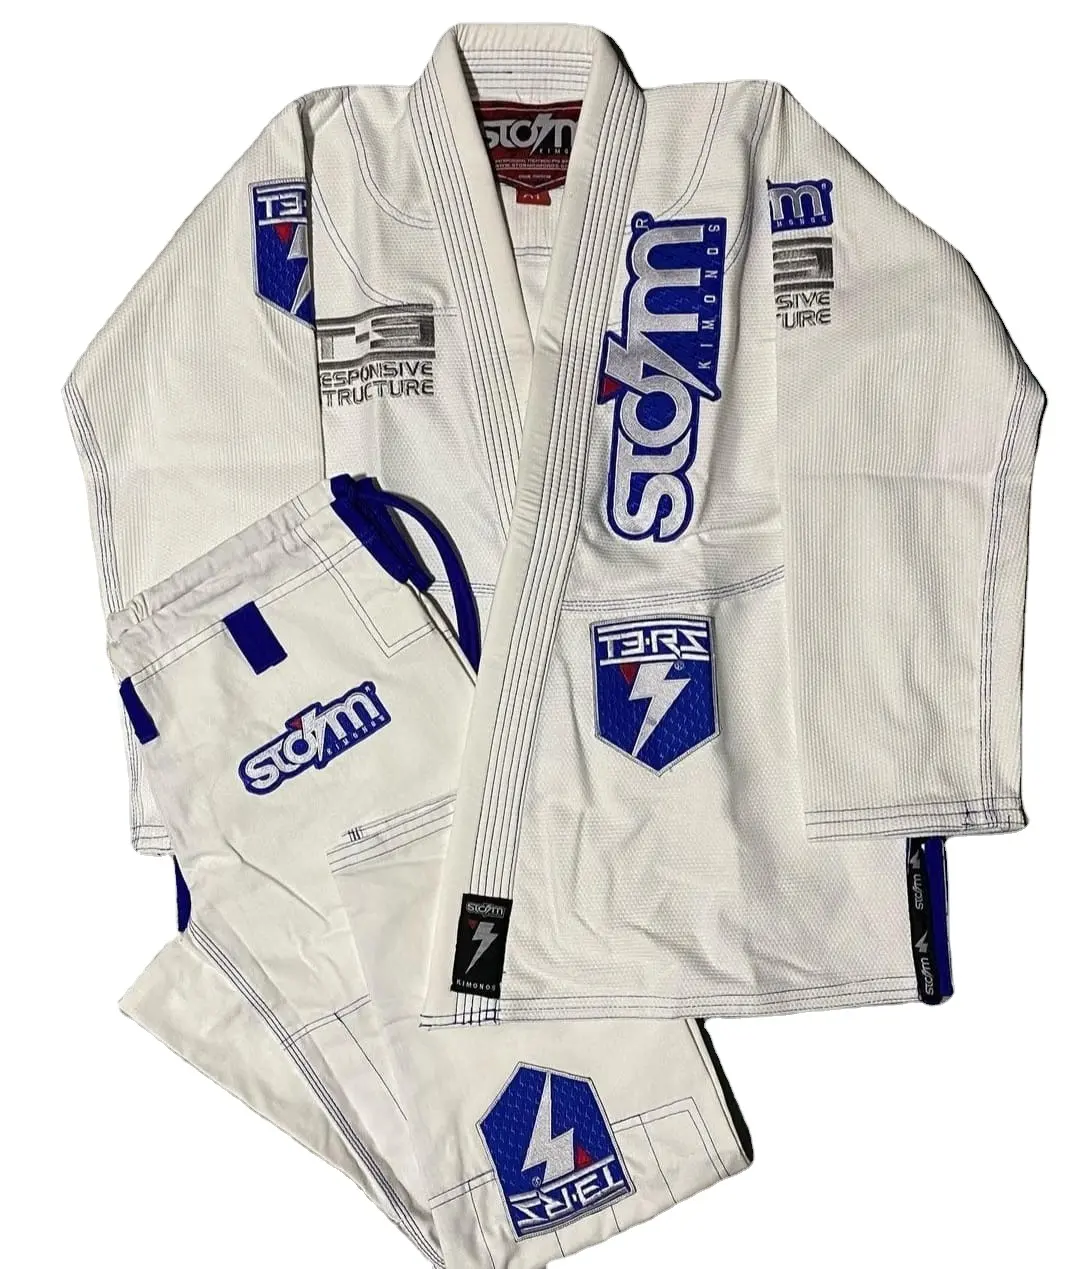 Пользовательский MMA Grappling Jiu Jitsu Gi бразильский BJJ Униформа боевые искусства Gi/высокое качество пользовательский шторм BJJ кимоно